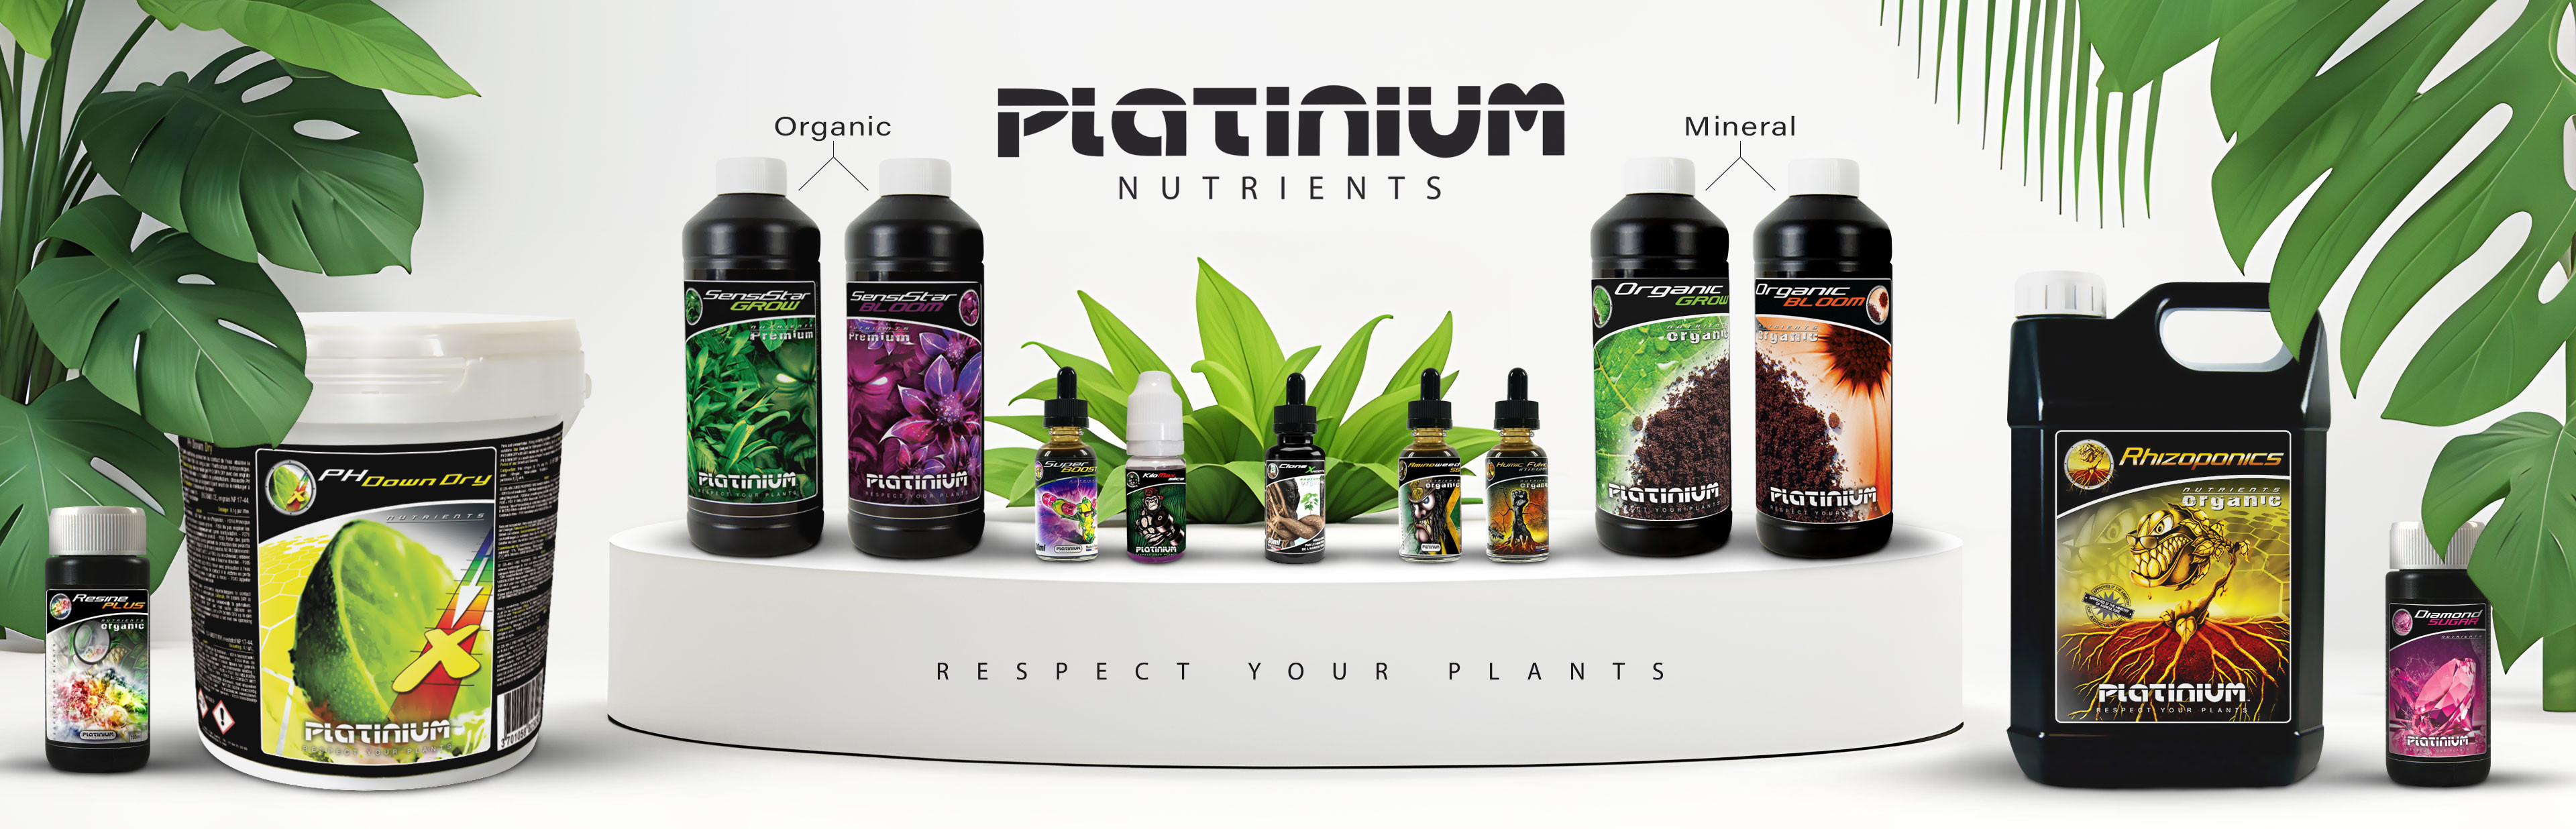 Platinium nutrients